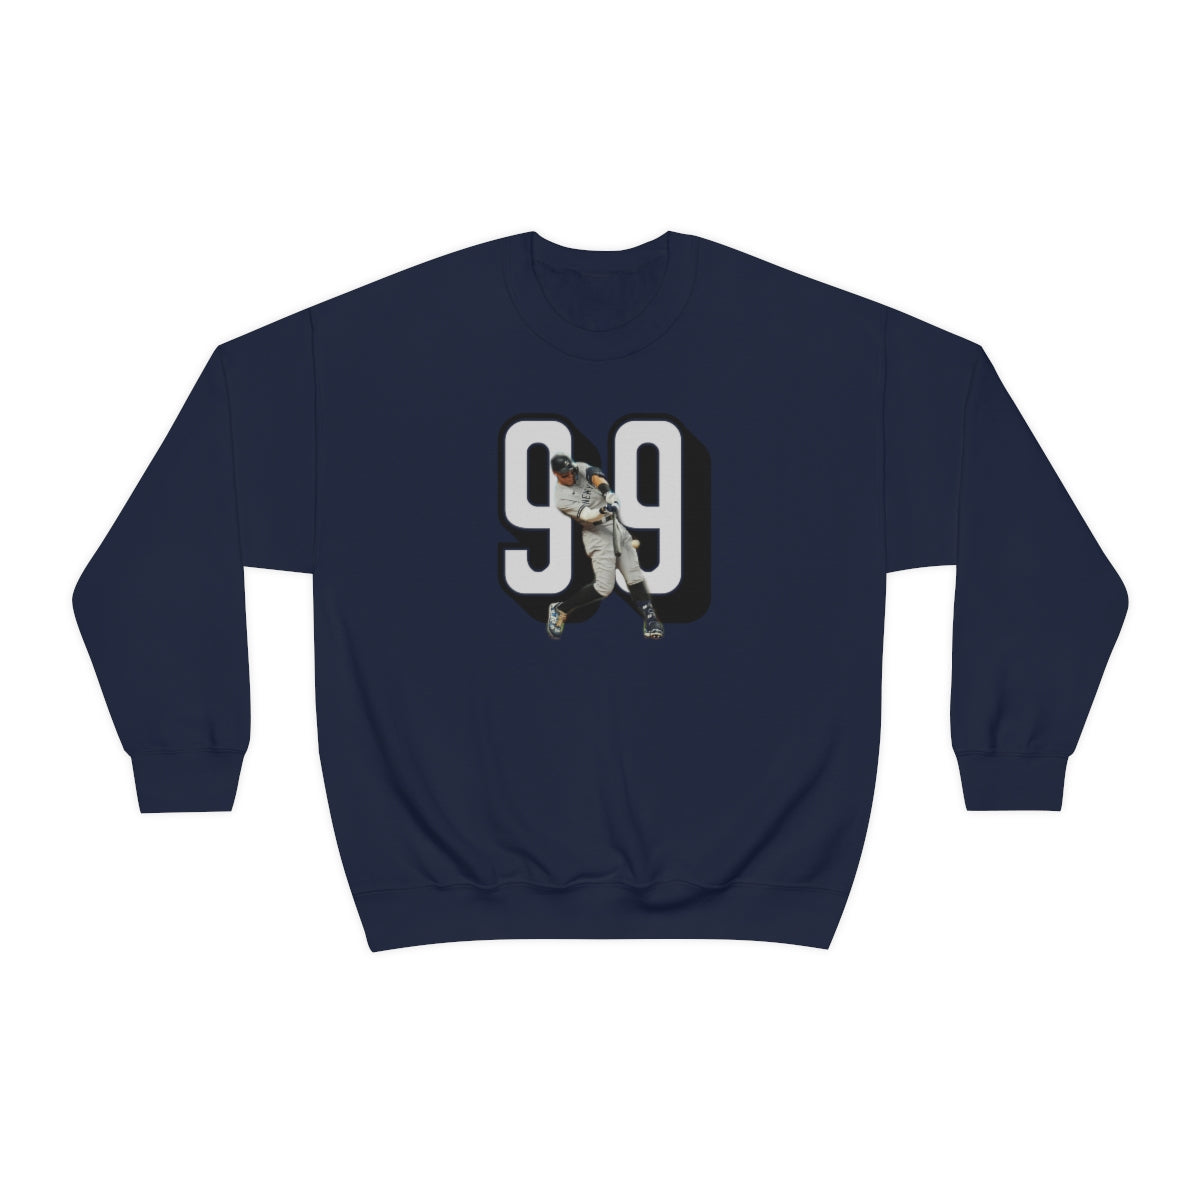 Yankees Aaron Judge 99 Crewneck Sweatshirt - IsGoodBrand